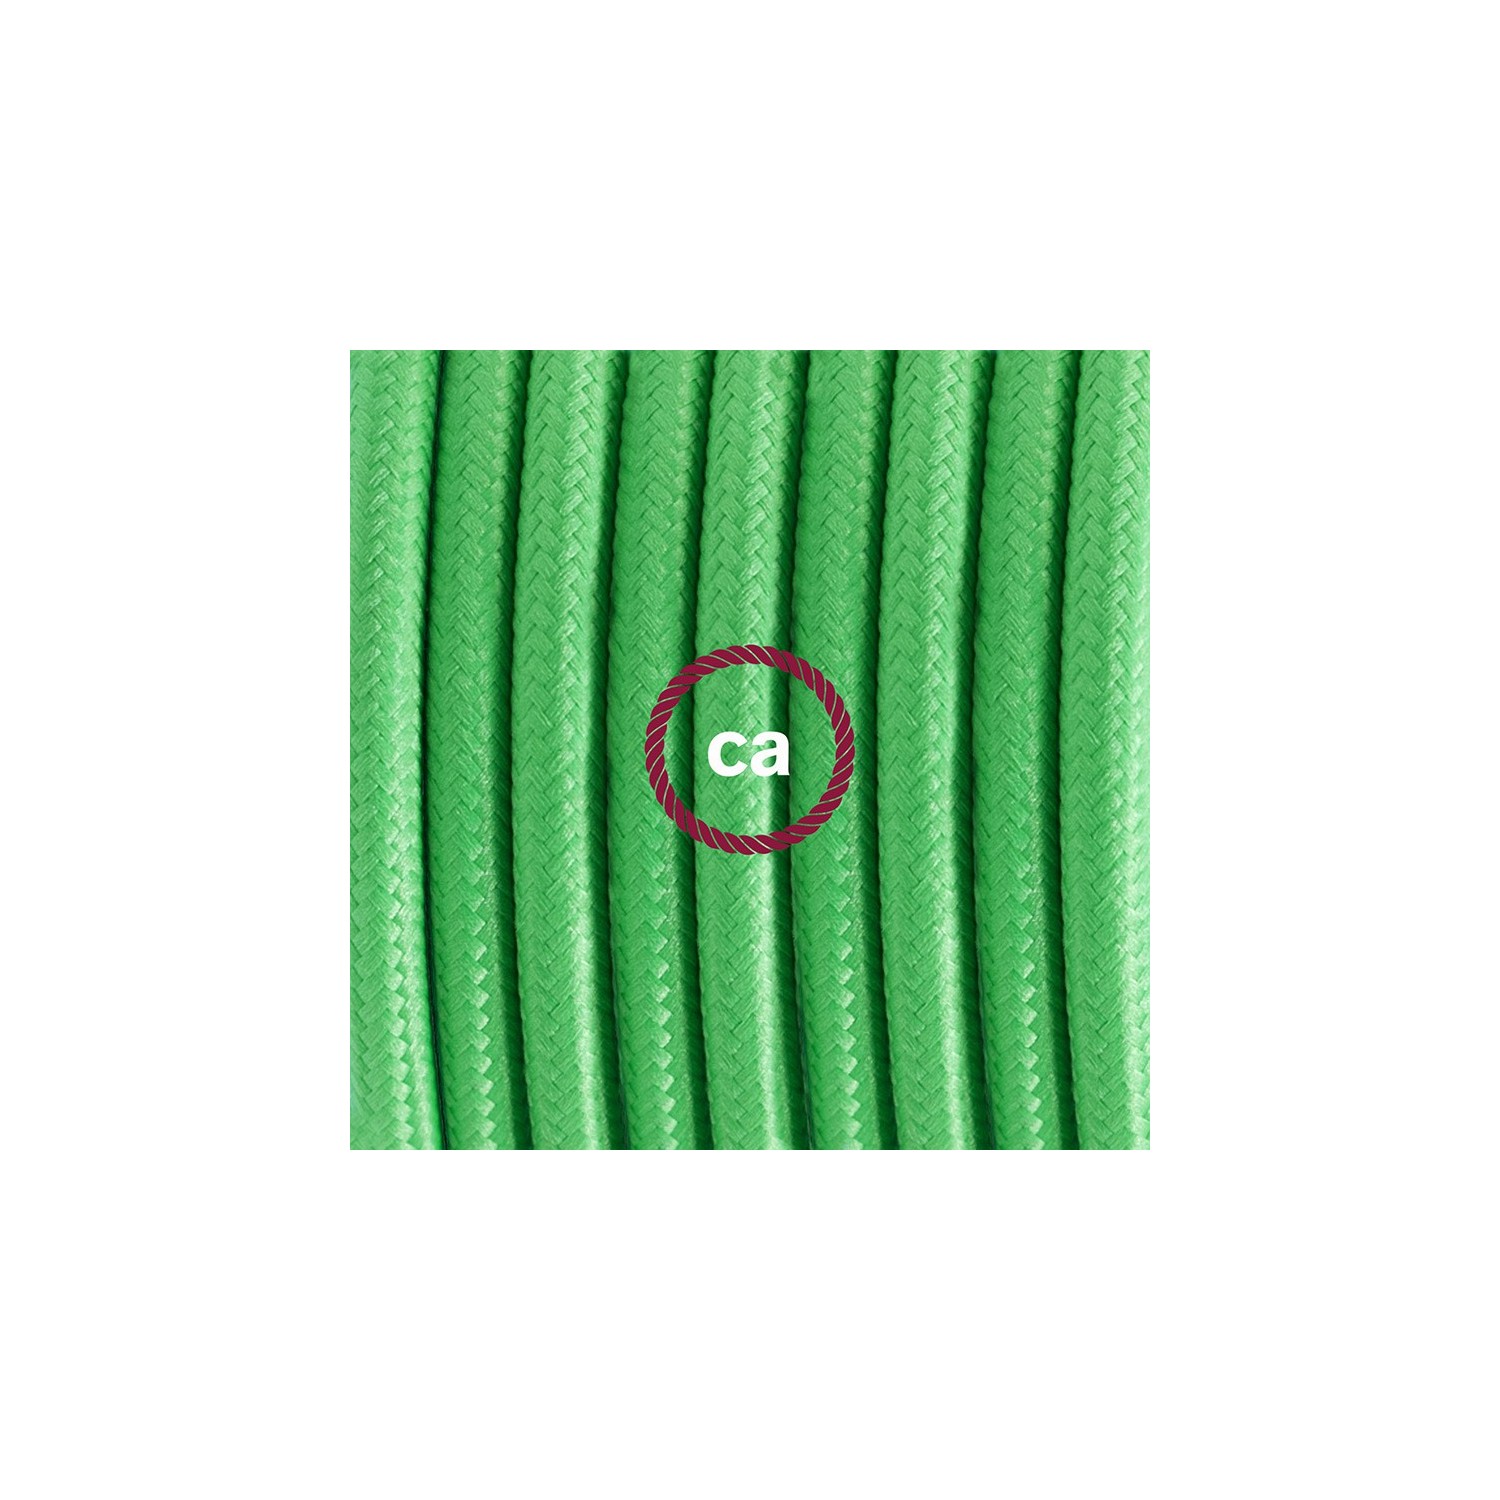 Ledningssæt, RM18 Lime Grøn Viskose 1,80 m. Vælg farve på kontakt og stik.